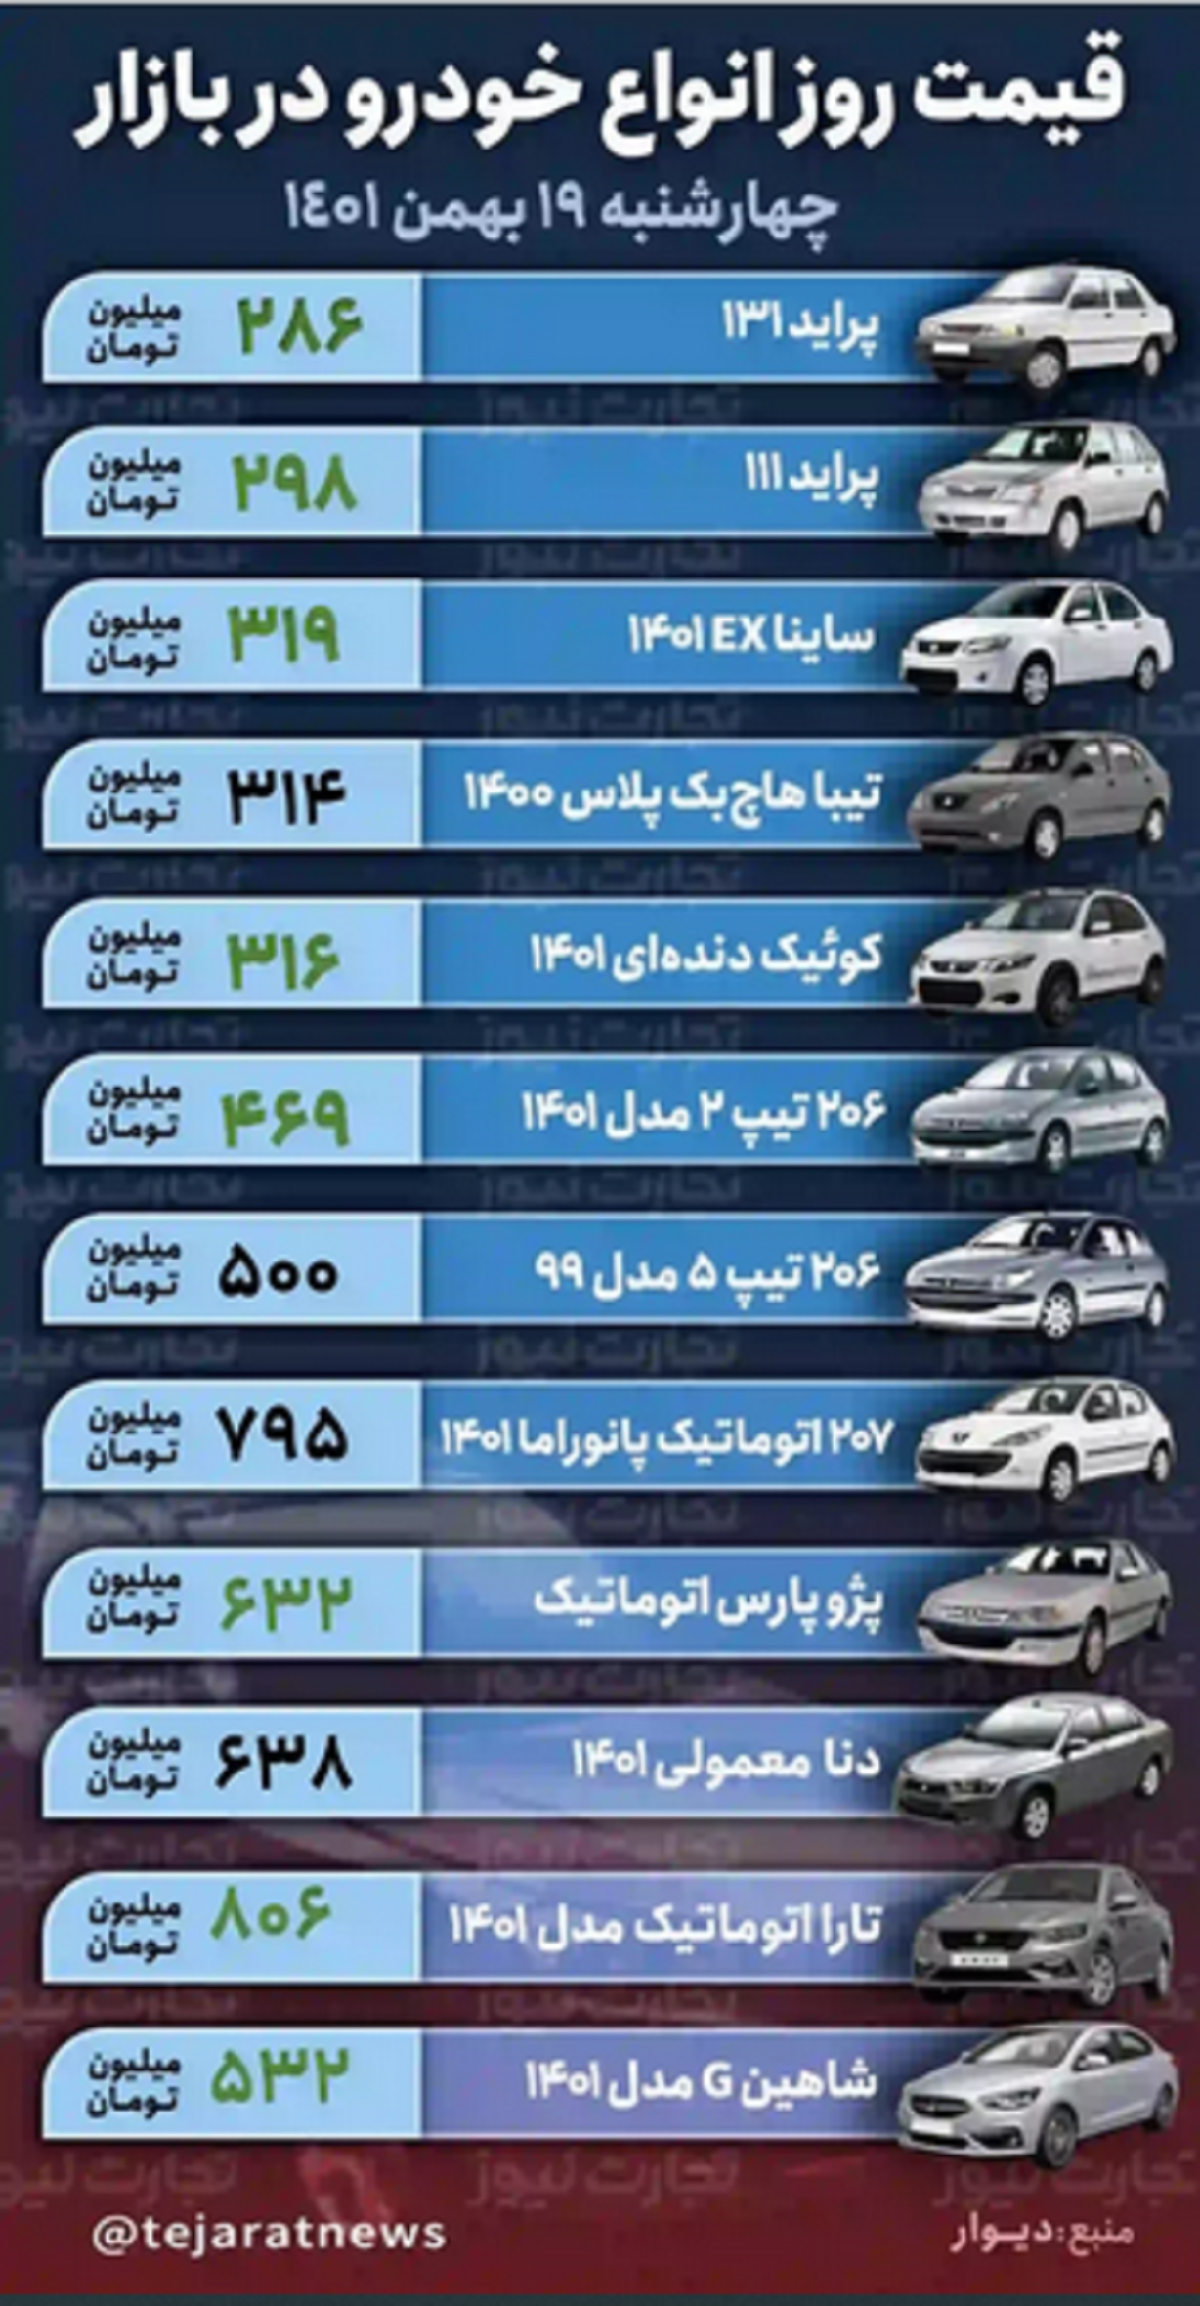 رشد ۱۲ ملیون تومانی قیمت پژو پارس در یک روز